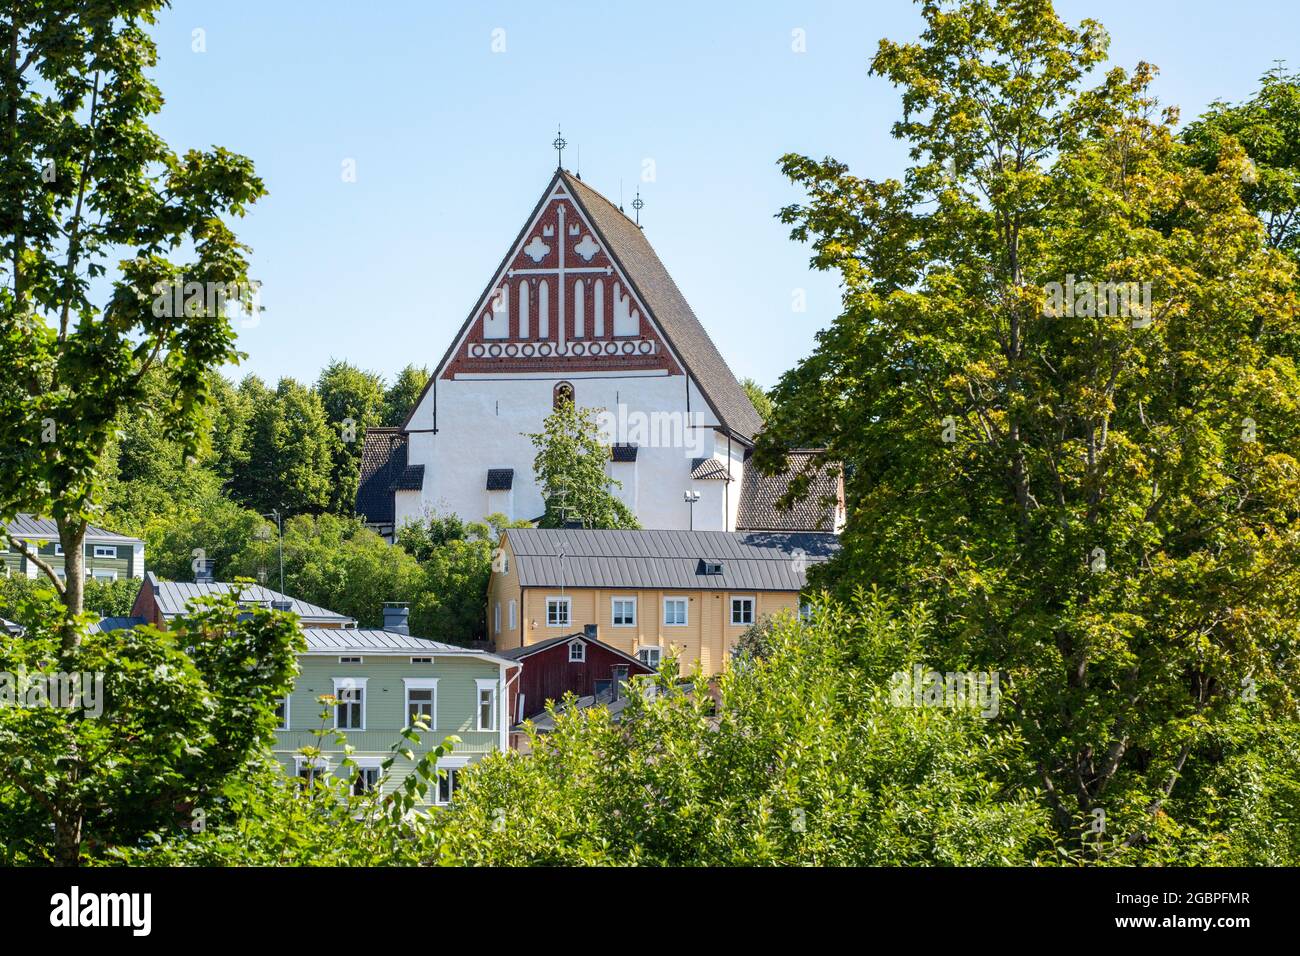 Die Kathedrale von Porvoo ist eine alte Steinkirche, ein sichtbares Wahrzeichen, das hoch auf einem Hügel über den bunten alten Holzhäusern des alten Porvoo, Finnland, steht Stockfoto